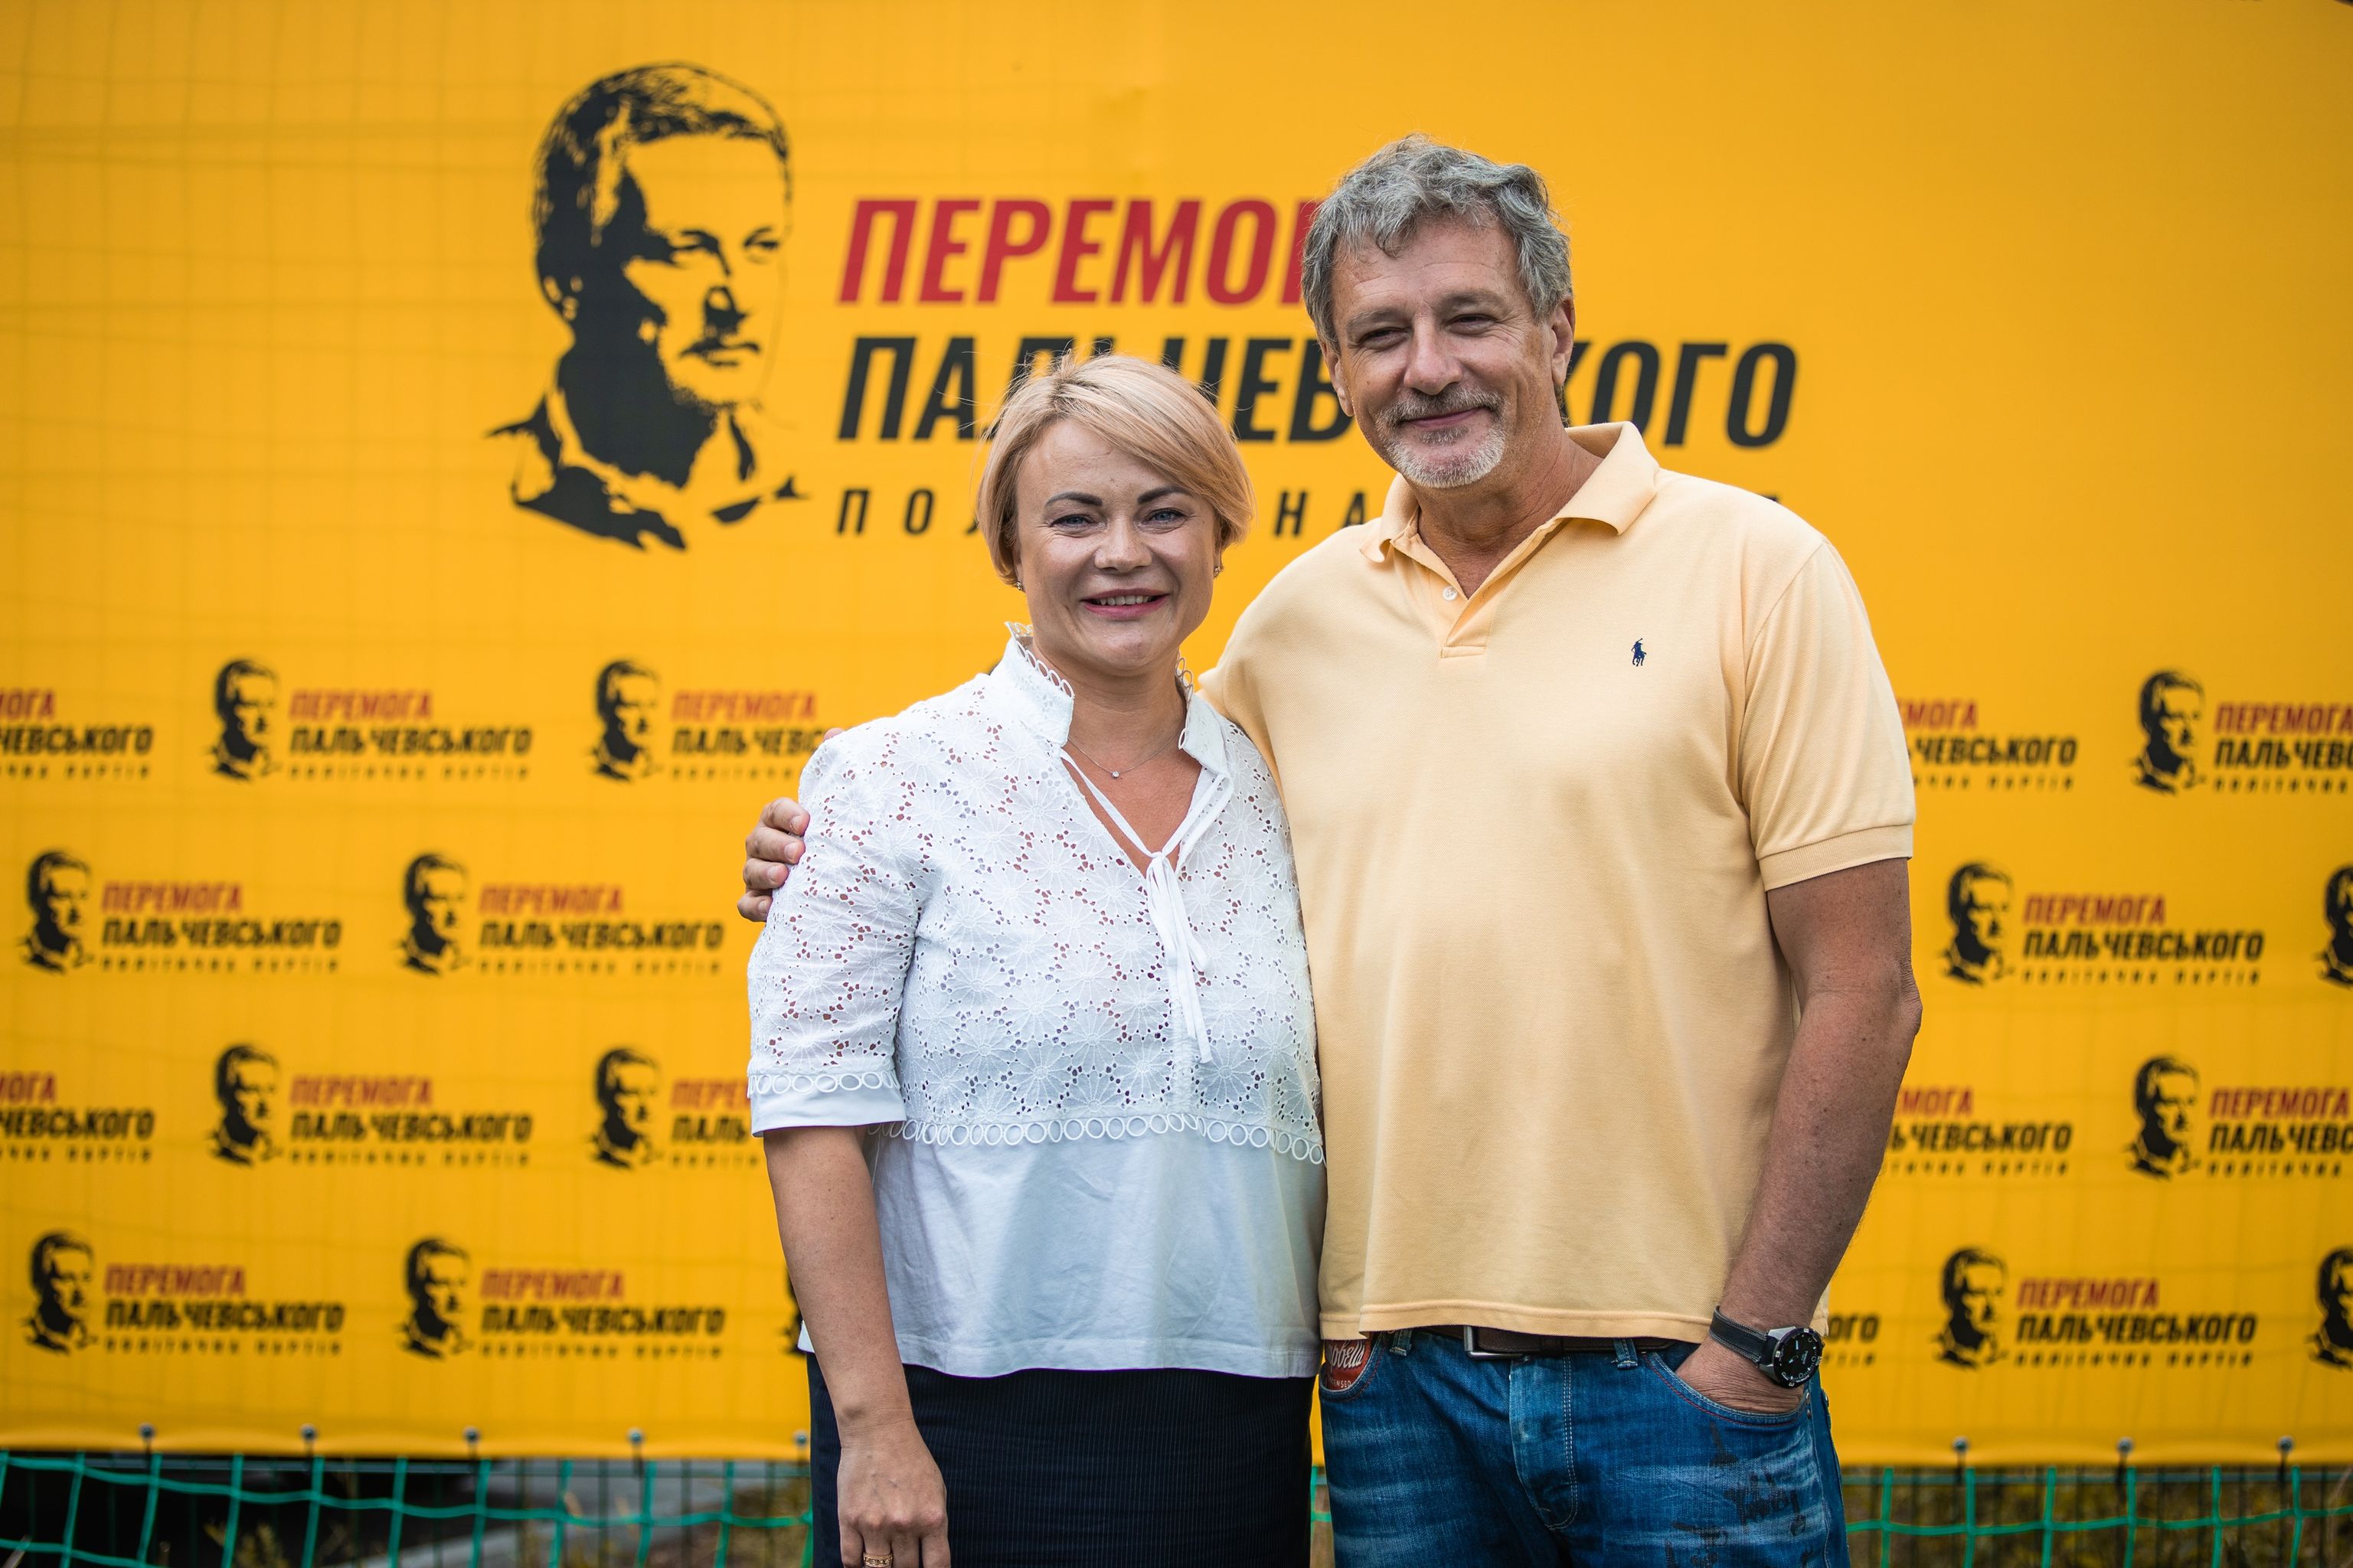 Кандидатам от политической партии “Перемога Пальчевского” в Киевской области отказывают в регистрации